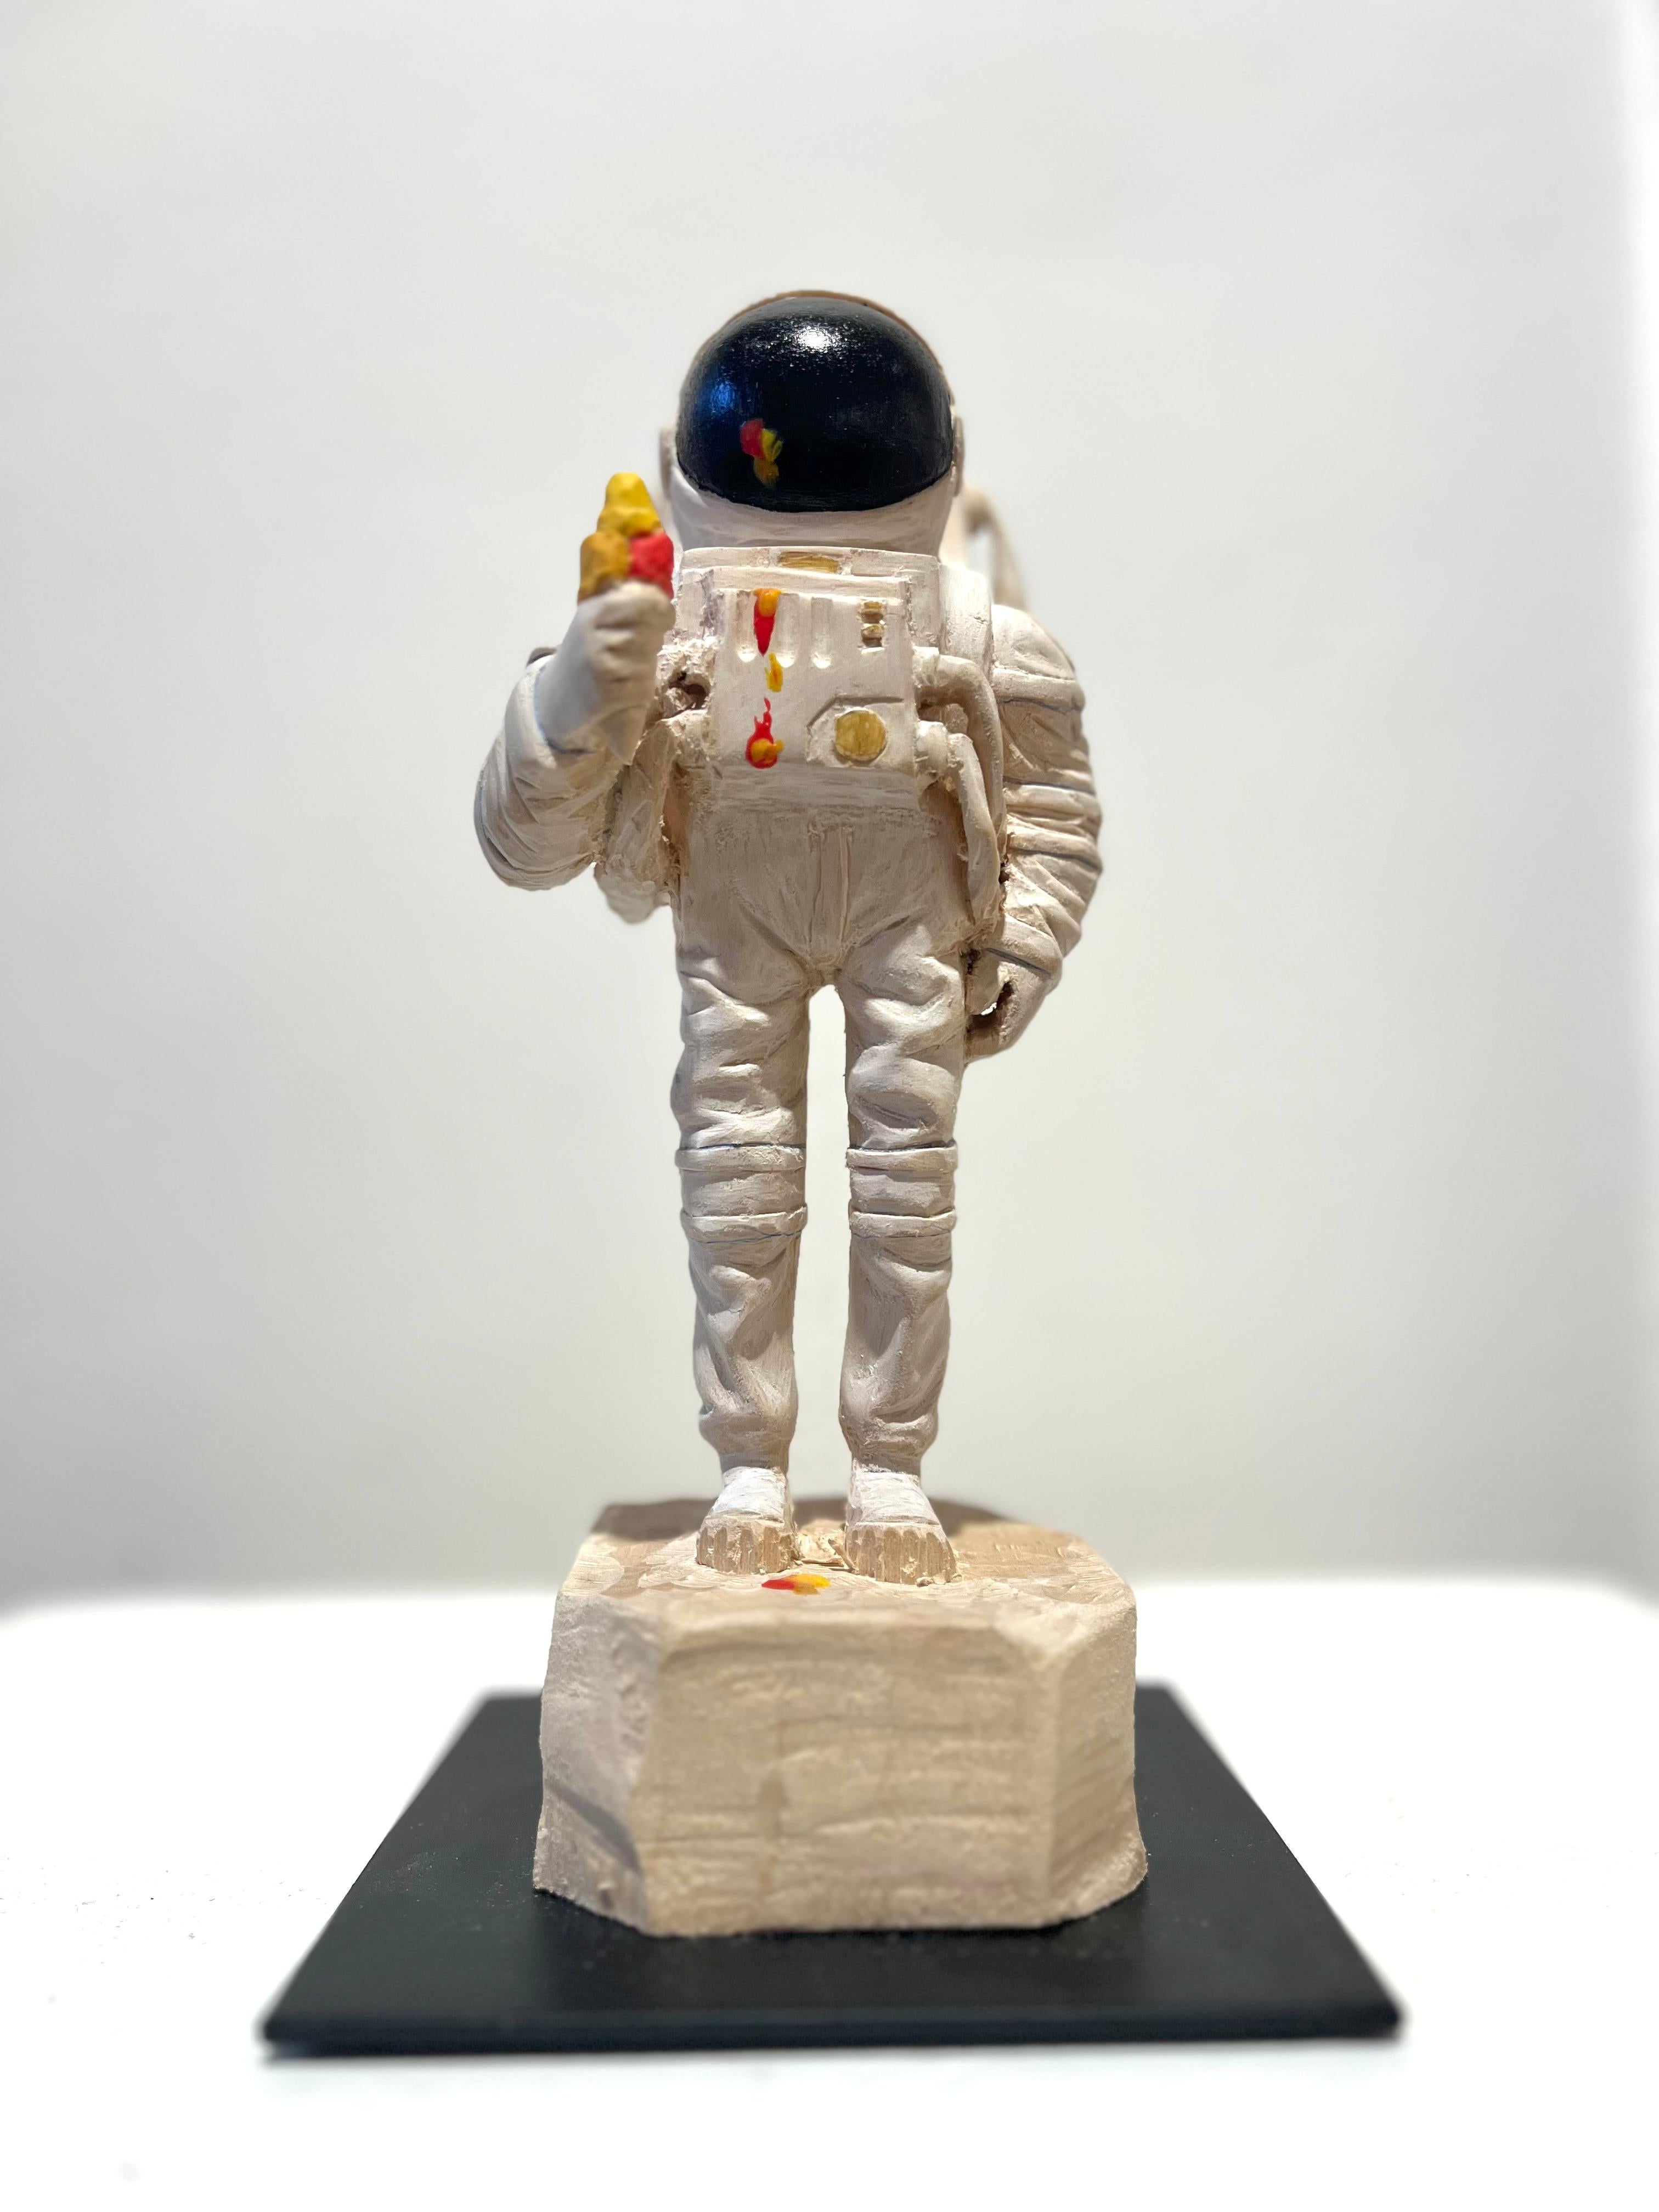 Philipp Liehr Figurative Sculpture – Einzigartige Holzskulptur eines Astronauten mit Eiscreme-Eiscreme-Eiscreme-Schmelz Zahn''